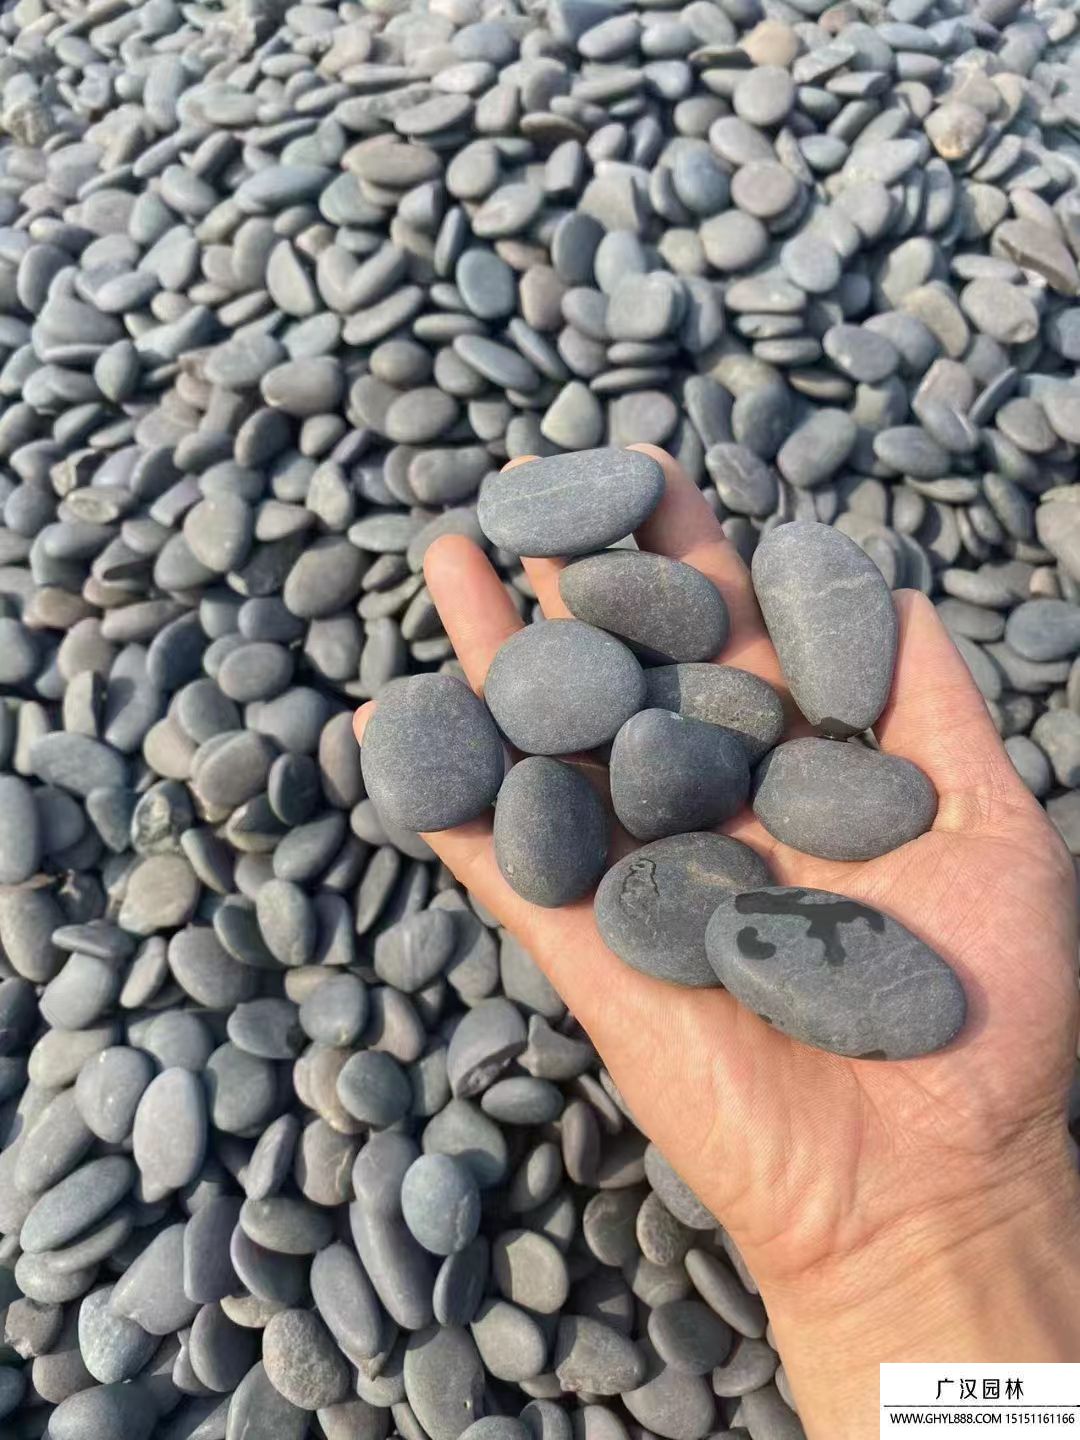 鹅卵石跟石头有什么区别